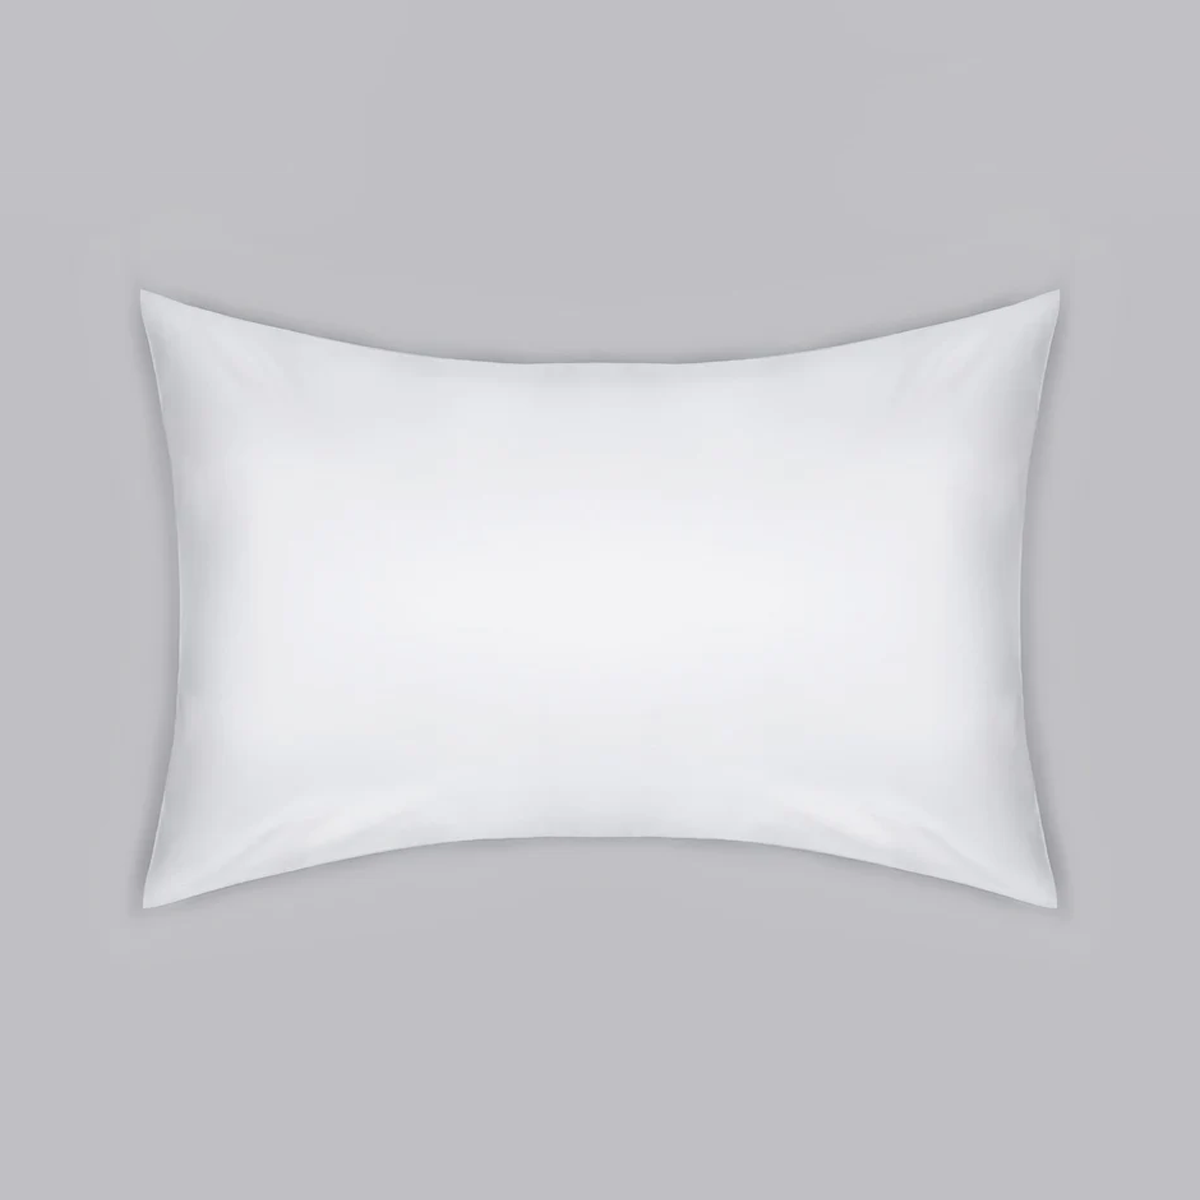 Pillowcase 200TC Cotton Percale - Housewife - White